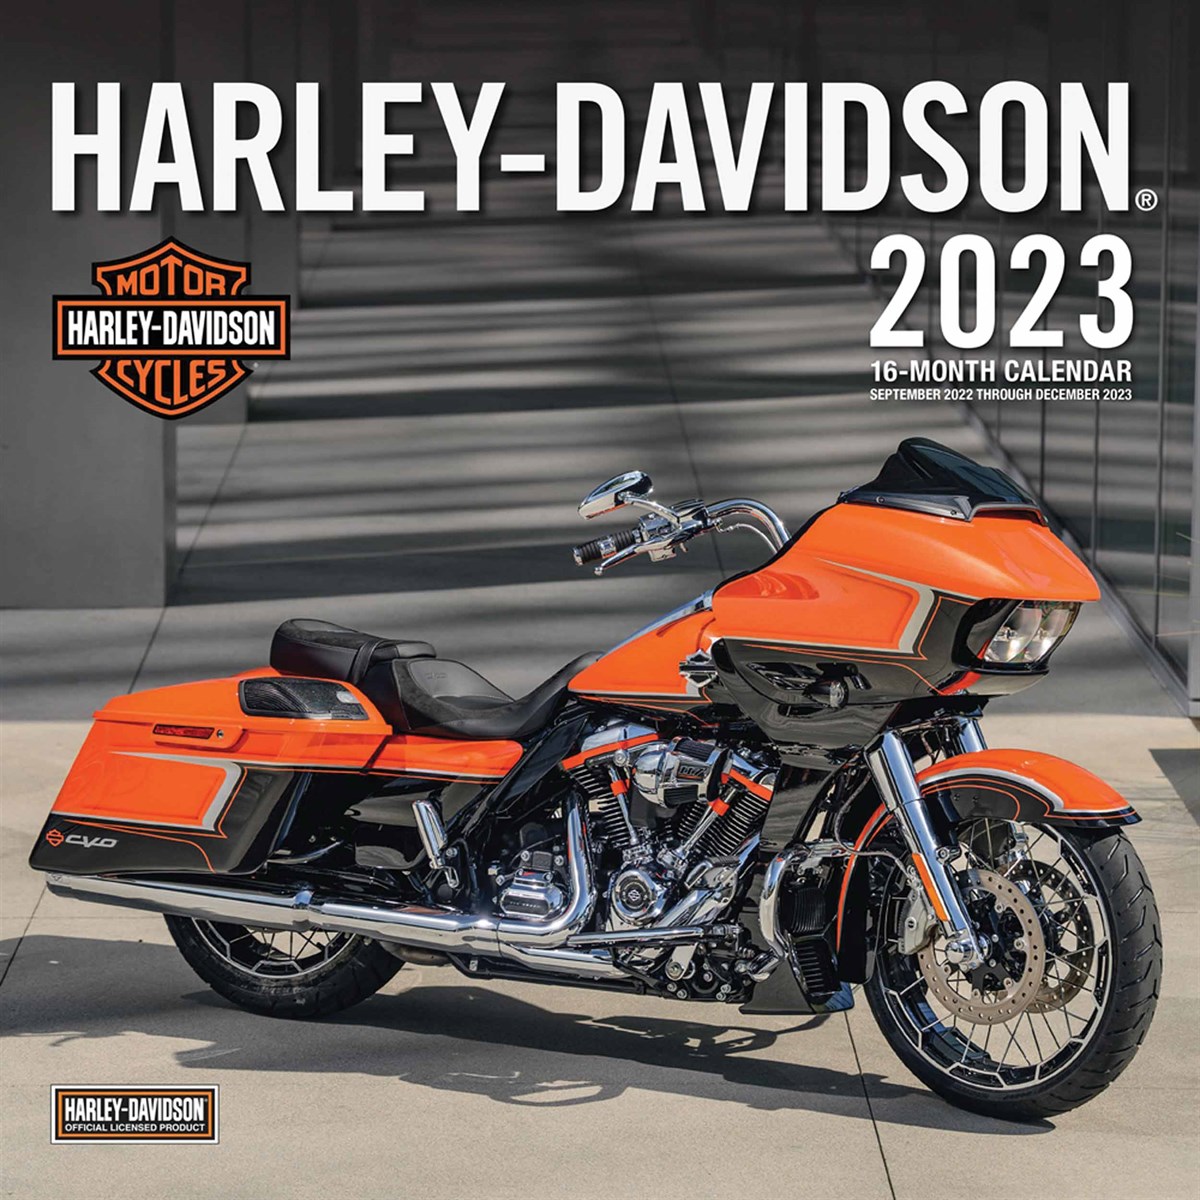 Harley Davidson 2023 Calendars